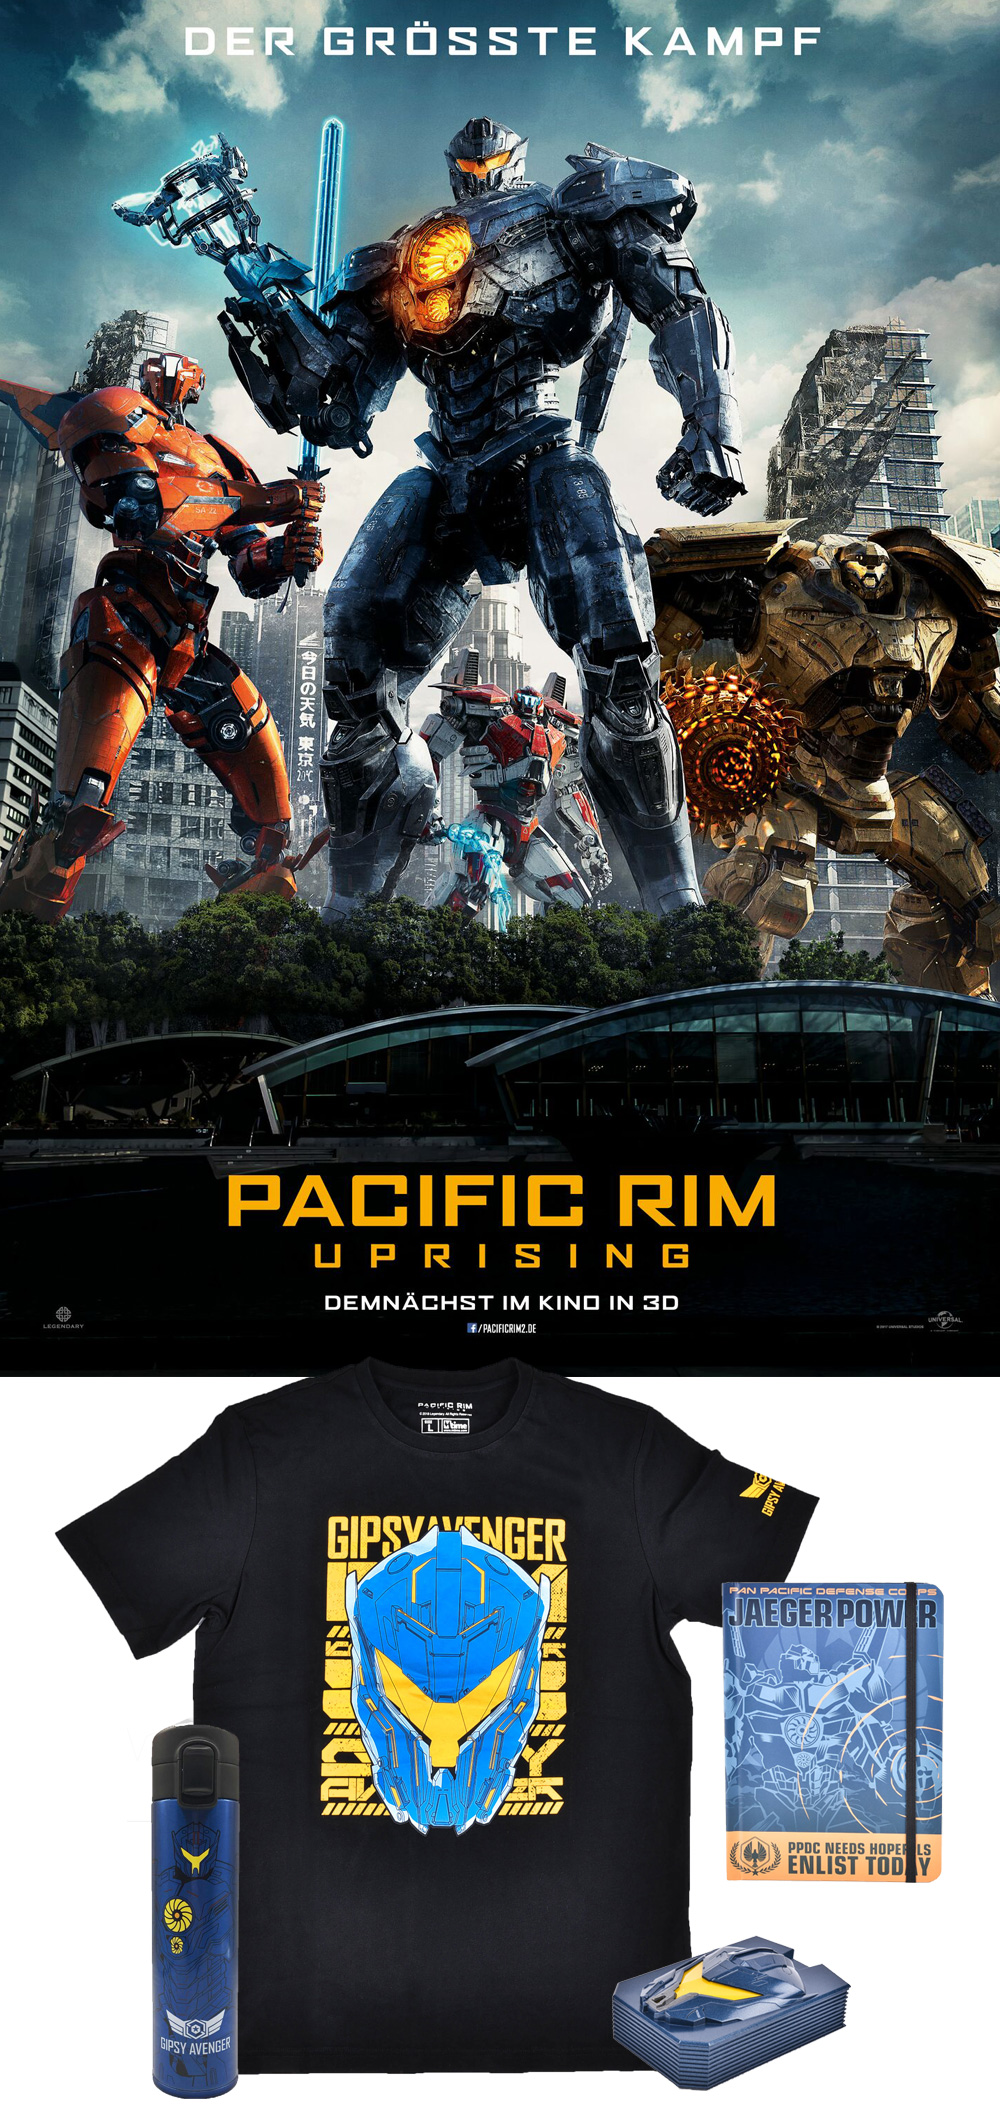 Bild 1:Gewinnspiel zum Kinostart von "Pacific Rim 2 - Uprising"!